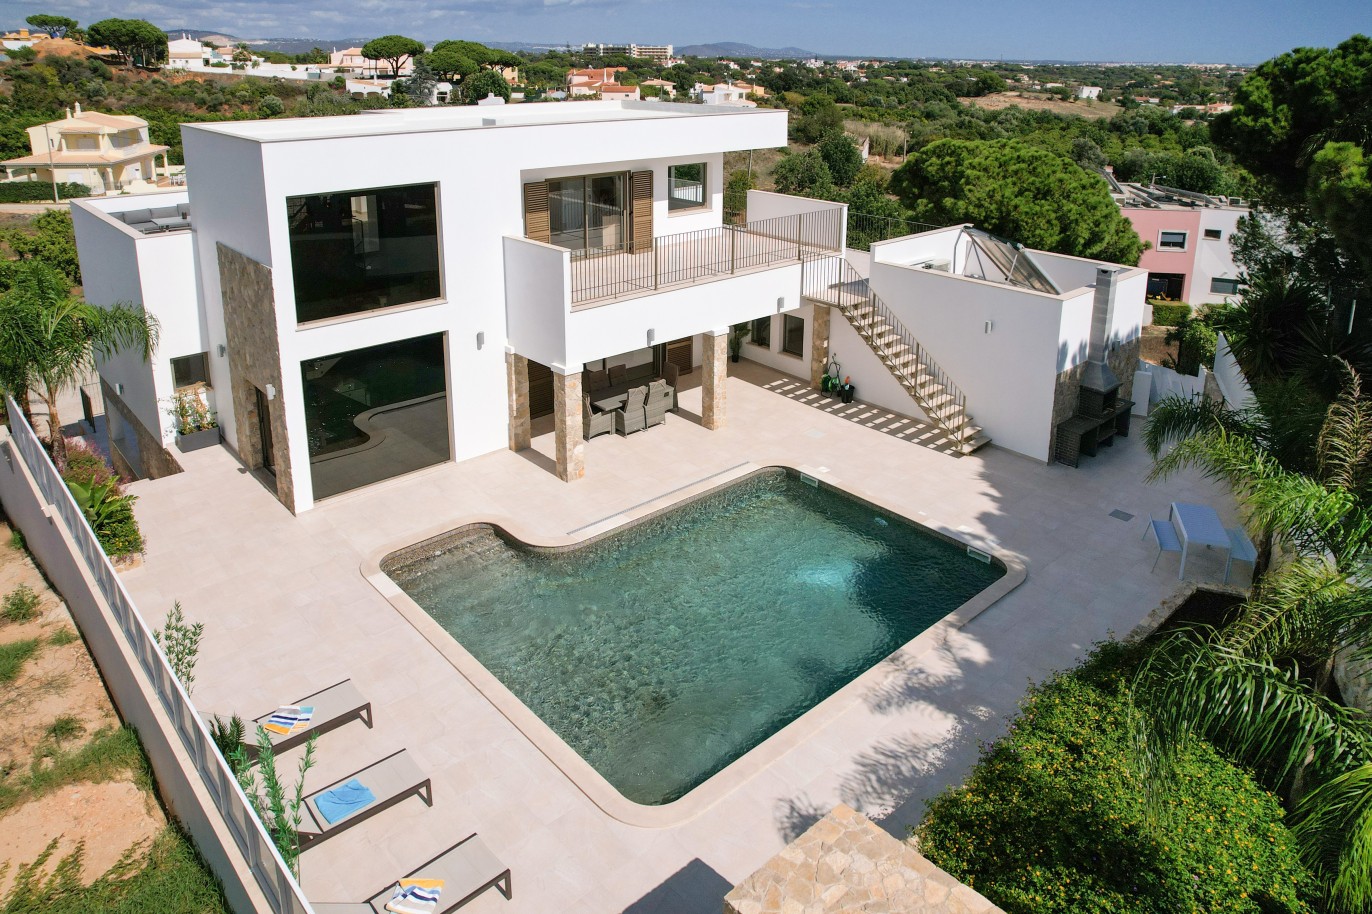 Moradia V5 com piscina, nova construção, para venda em Albufeira, Algarve_238317